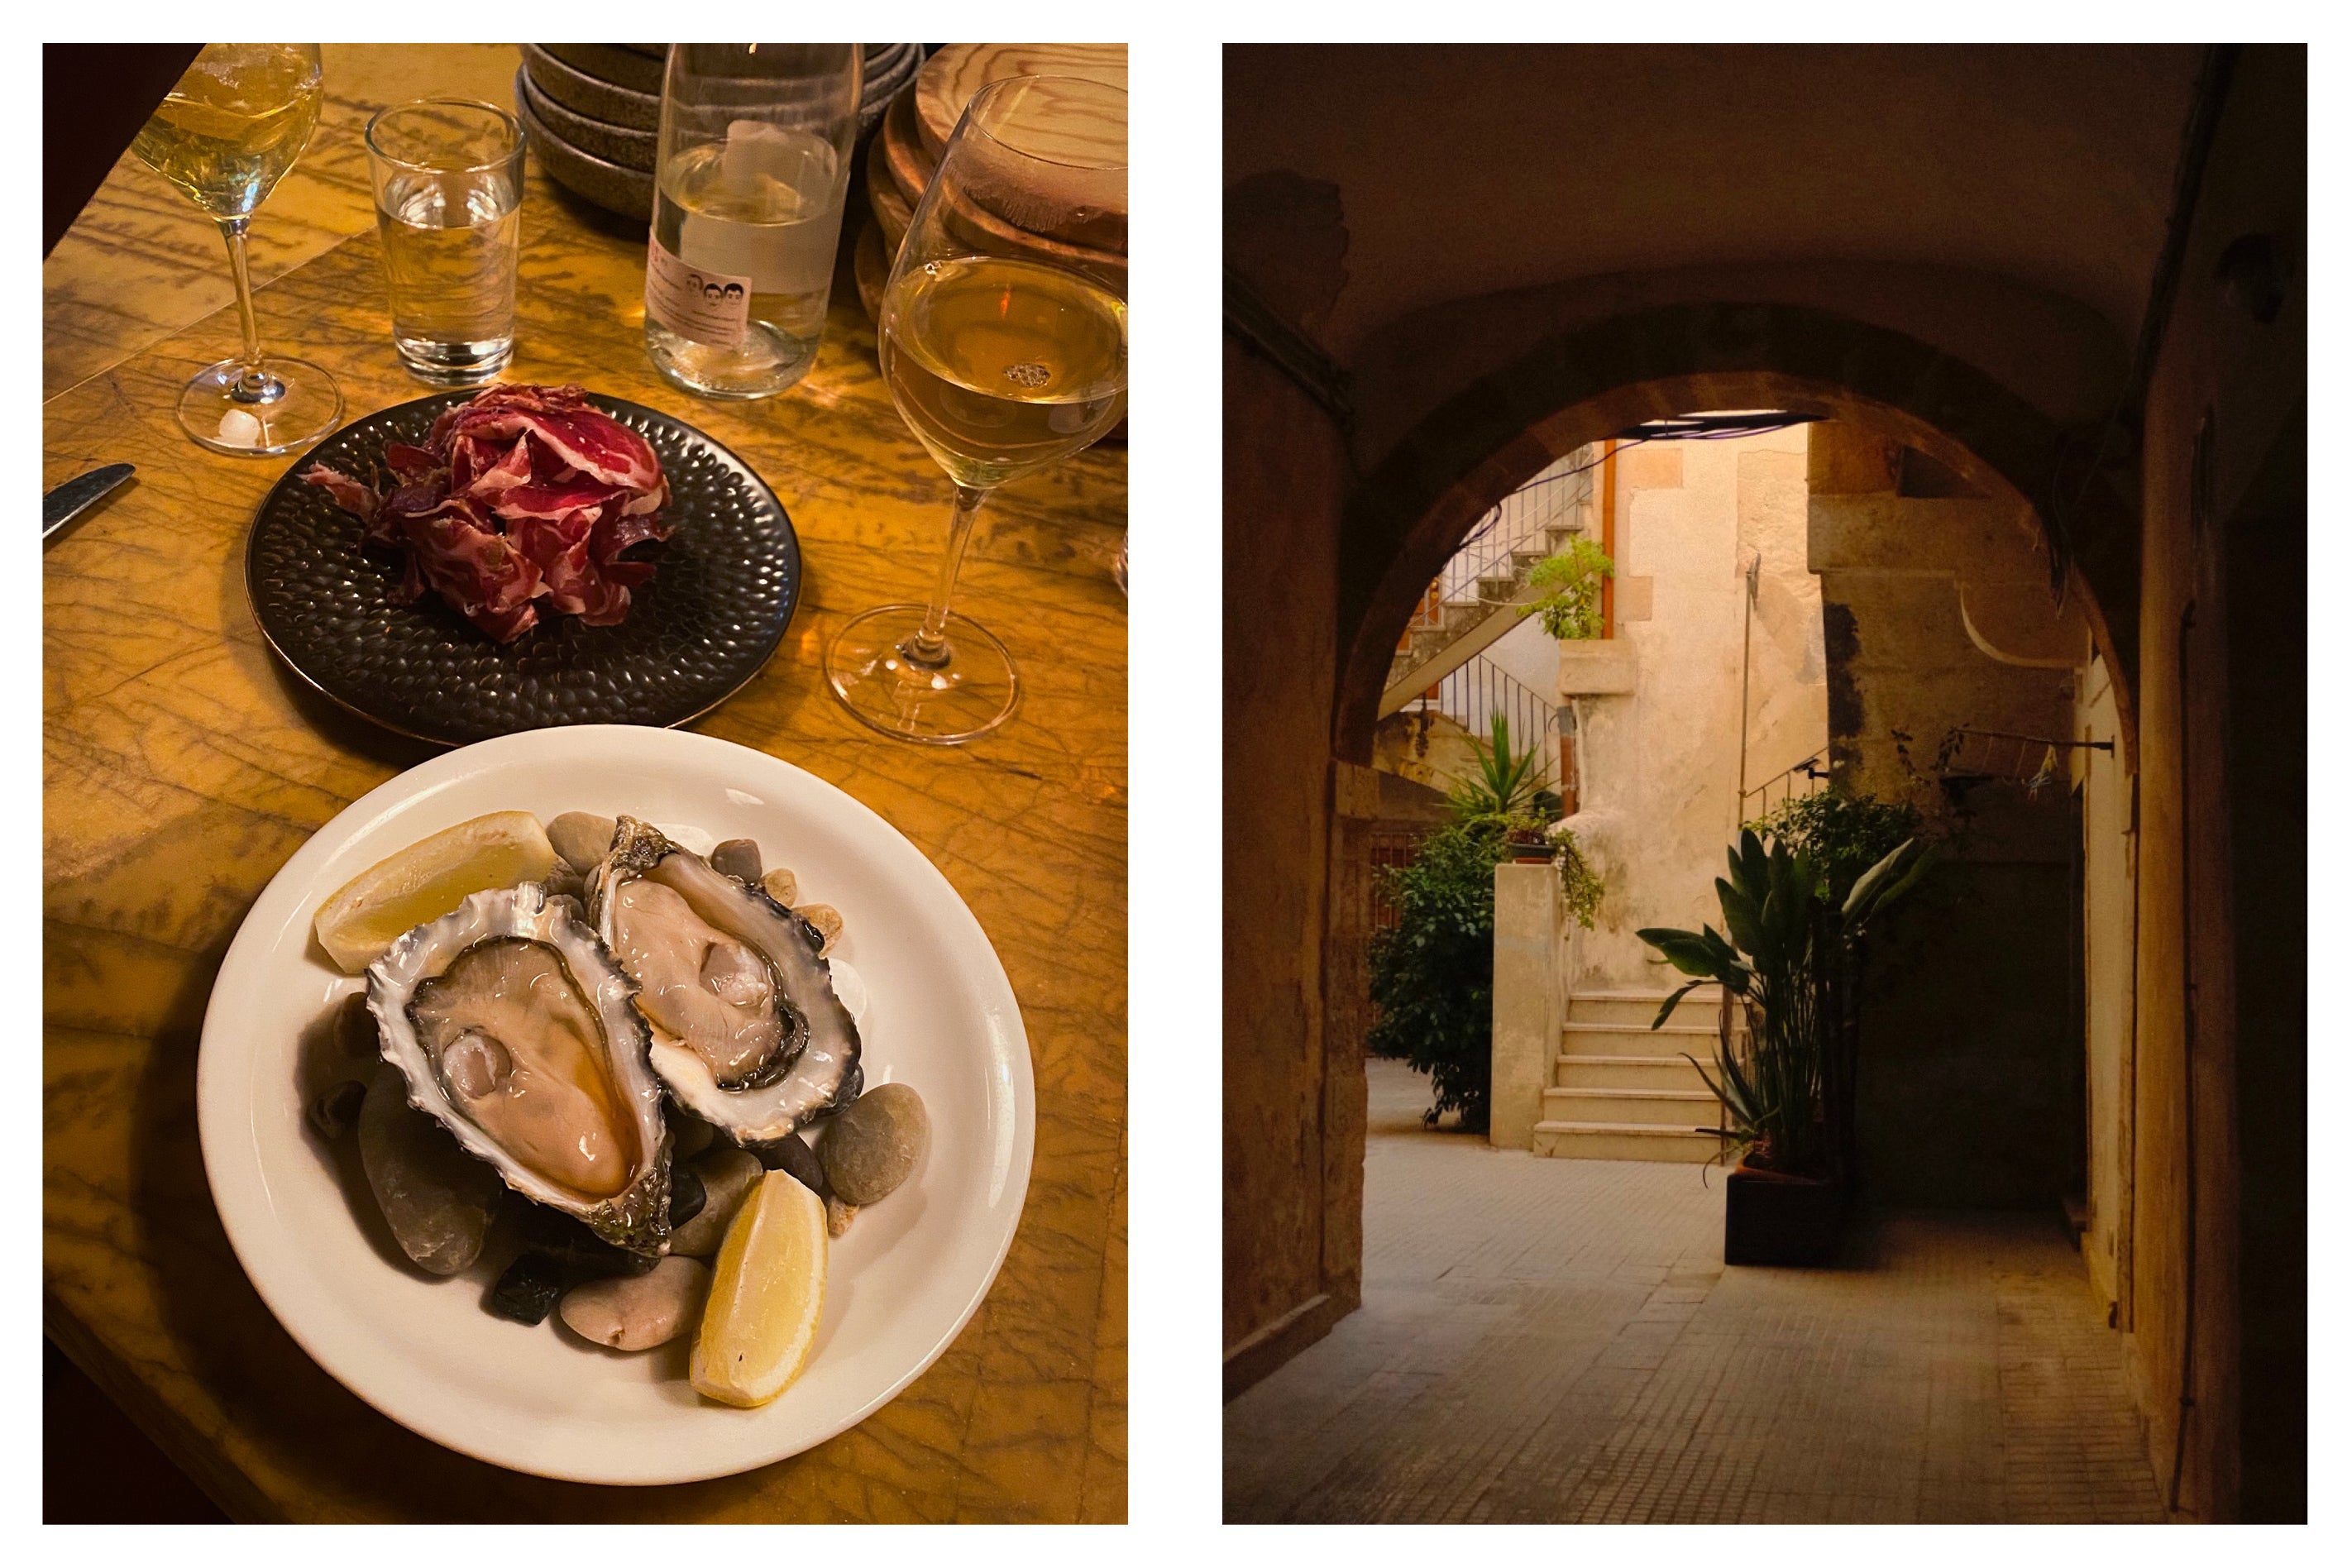 Une image des huîtres et de l'architecture en Sicile.